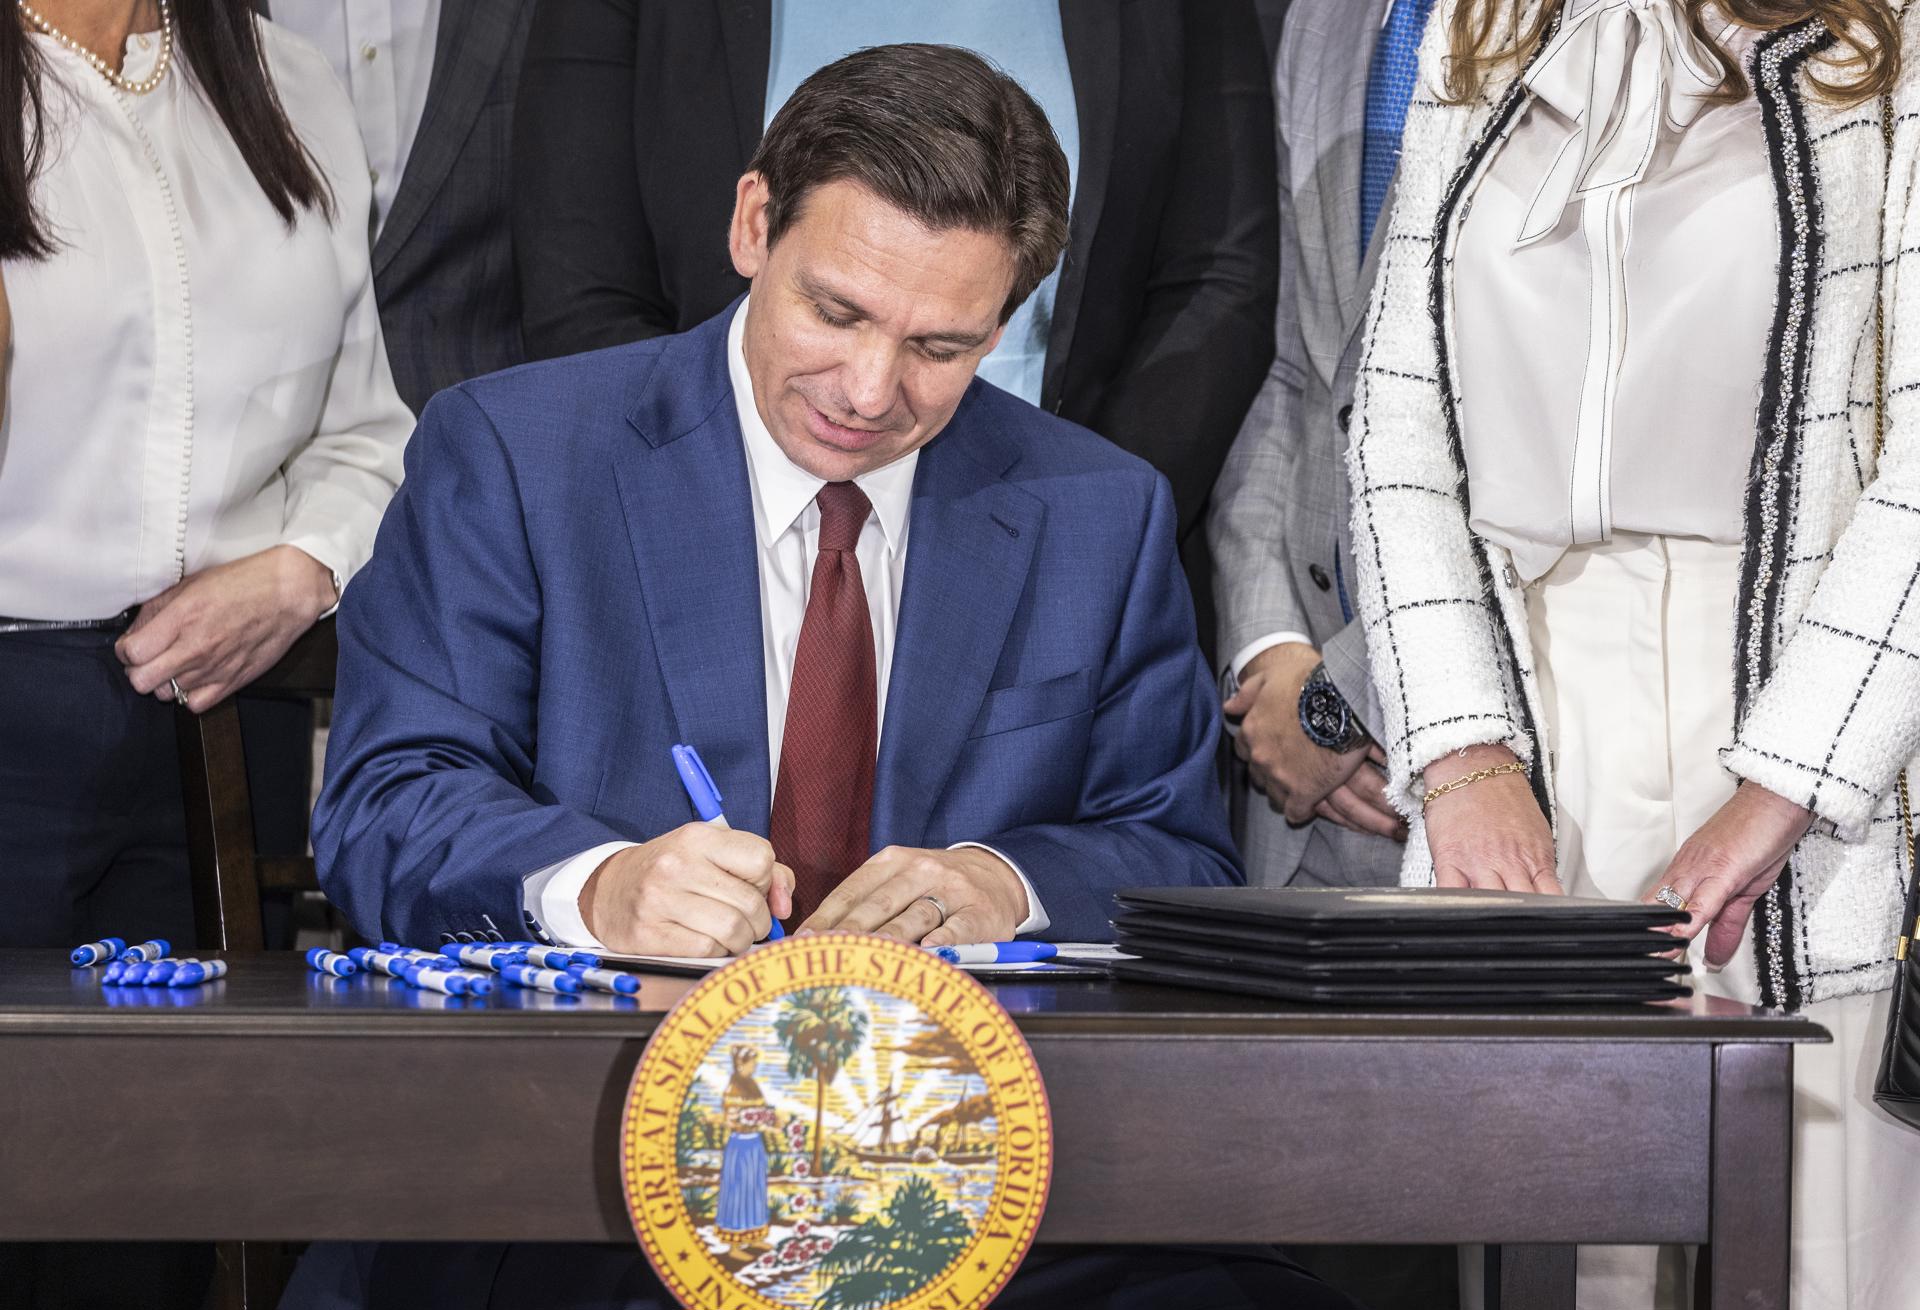 DeSantis firmó una ley que afecta a los conductores de Florida